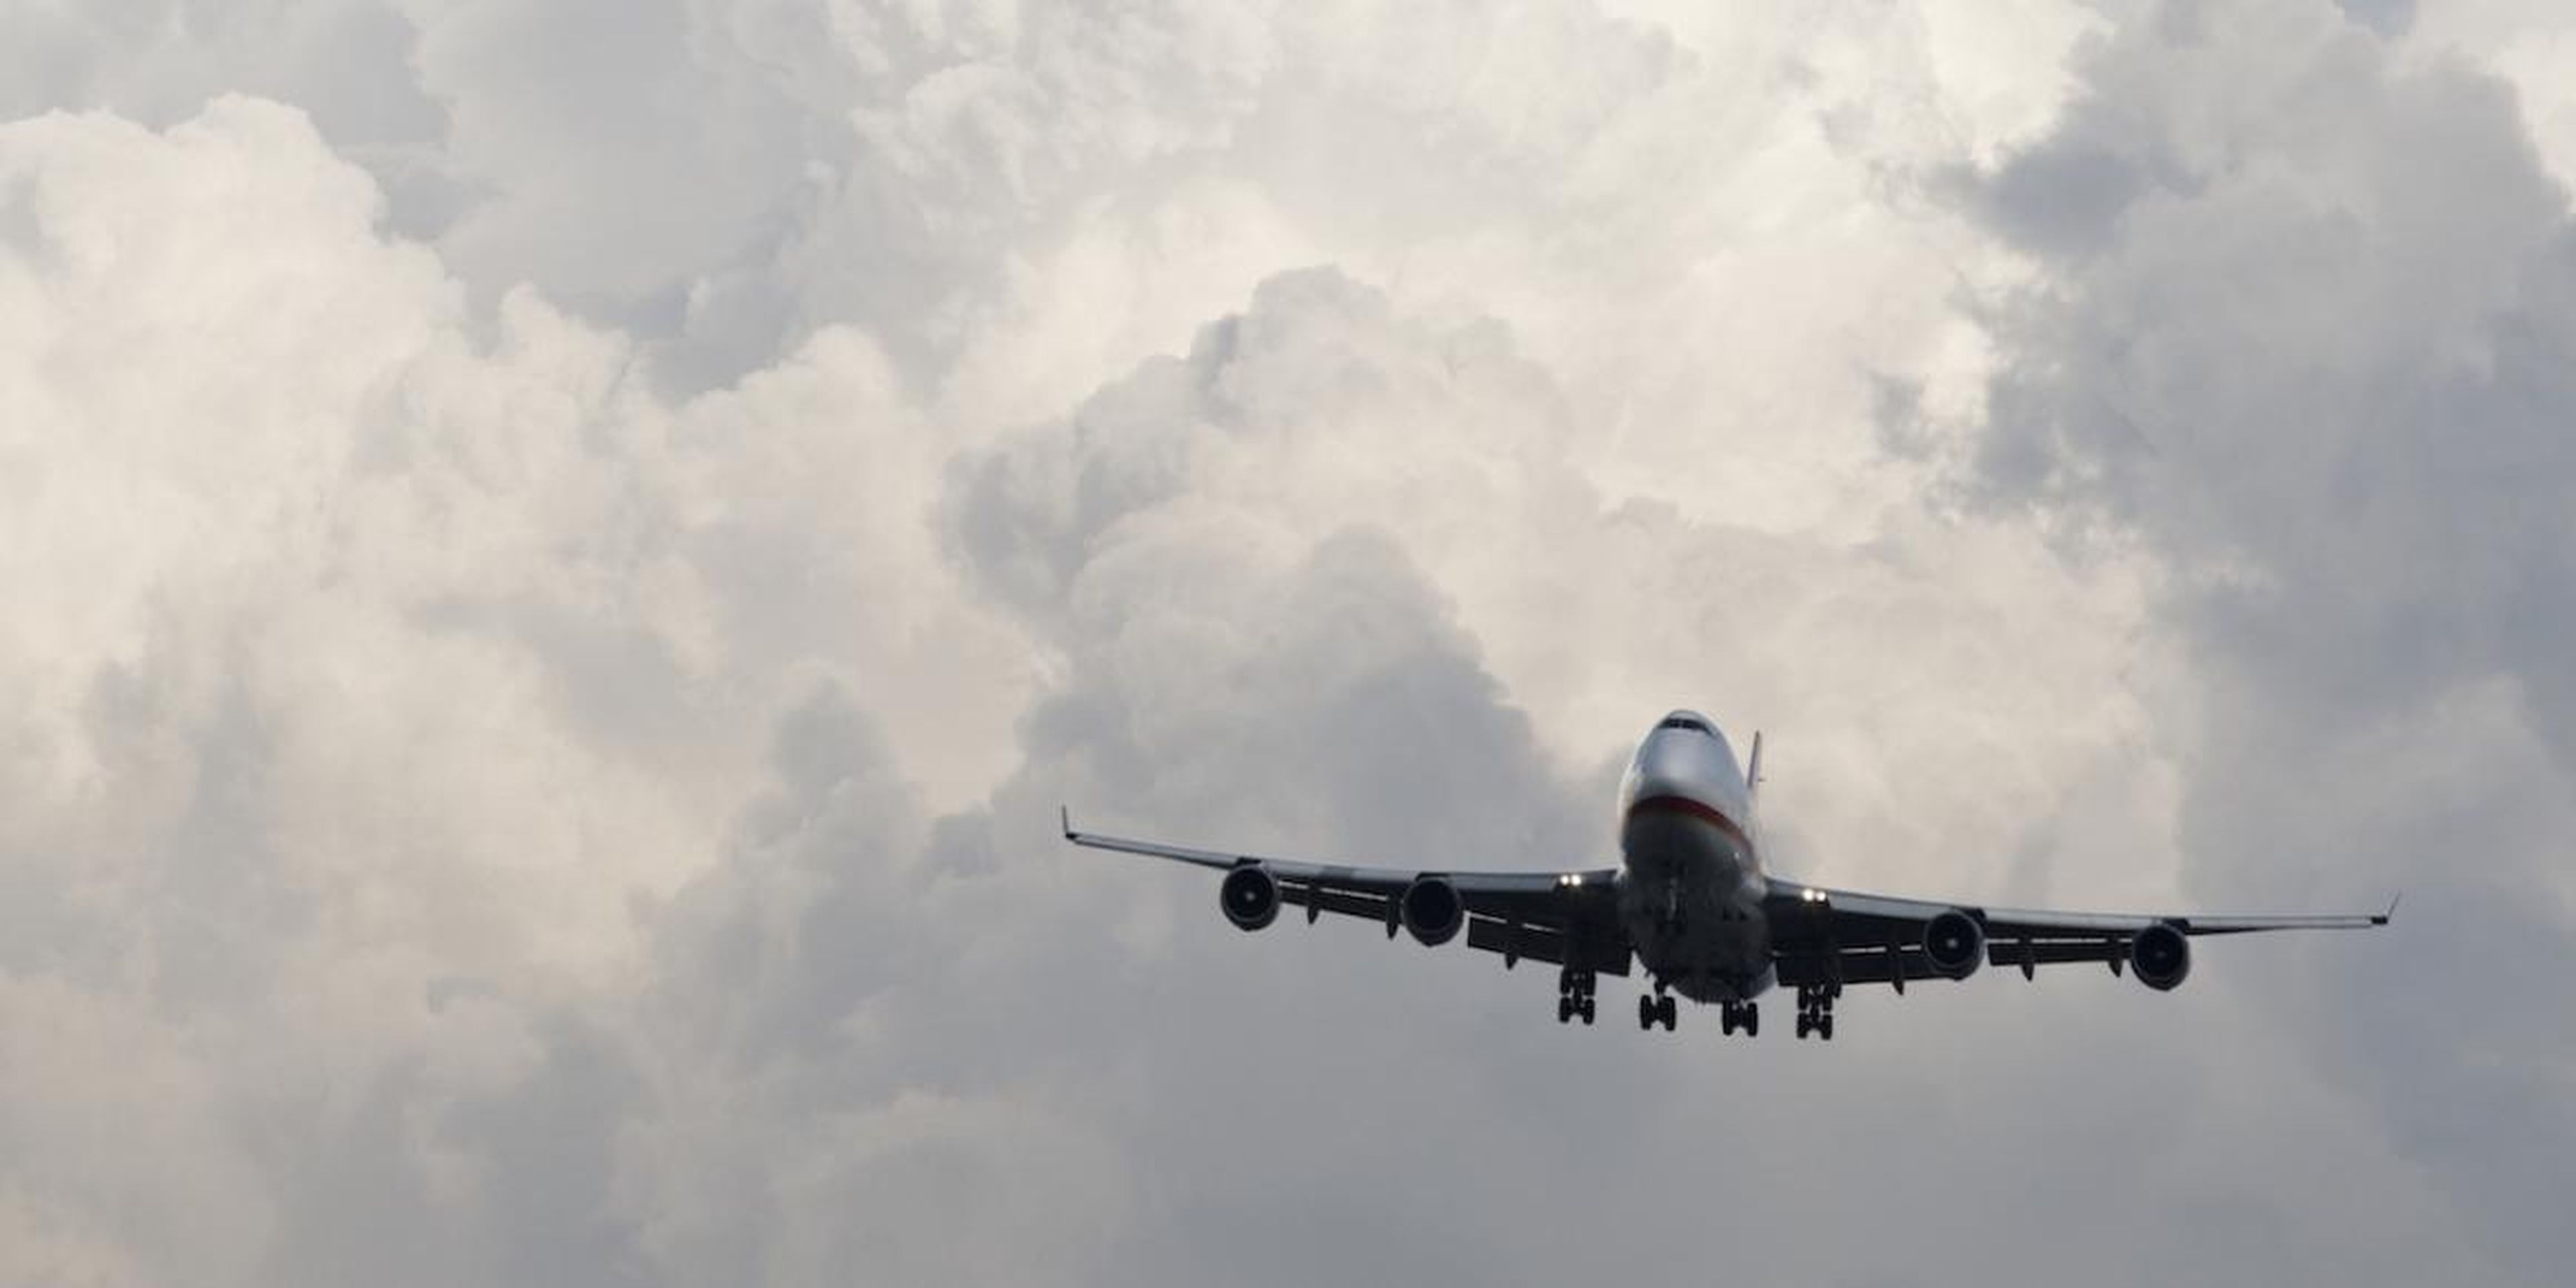 Un pasajero consiguió grabar este terrorífico vídeo de unas turbulencias que incluso lanzan a una azafata contra el techo del avión